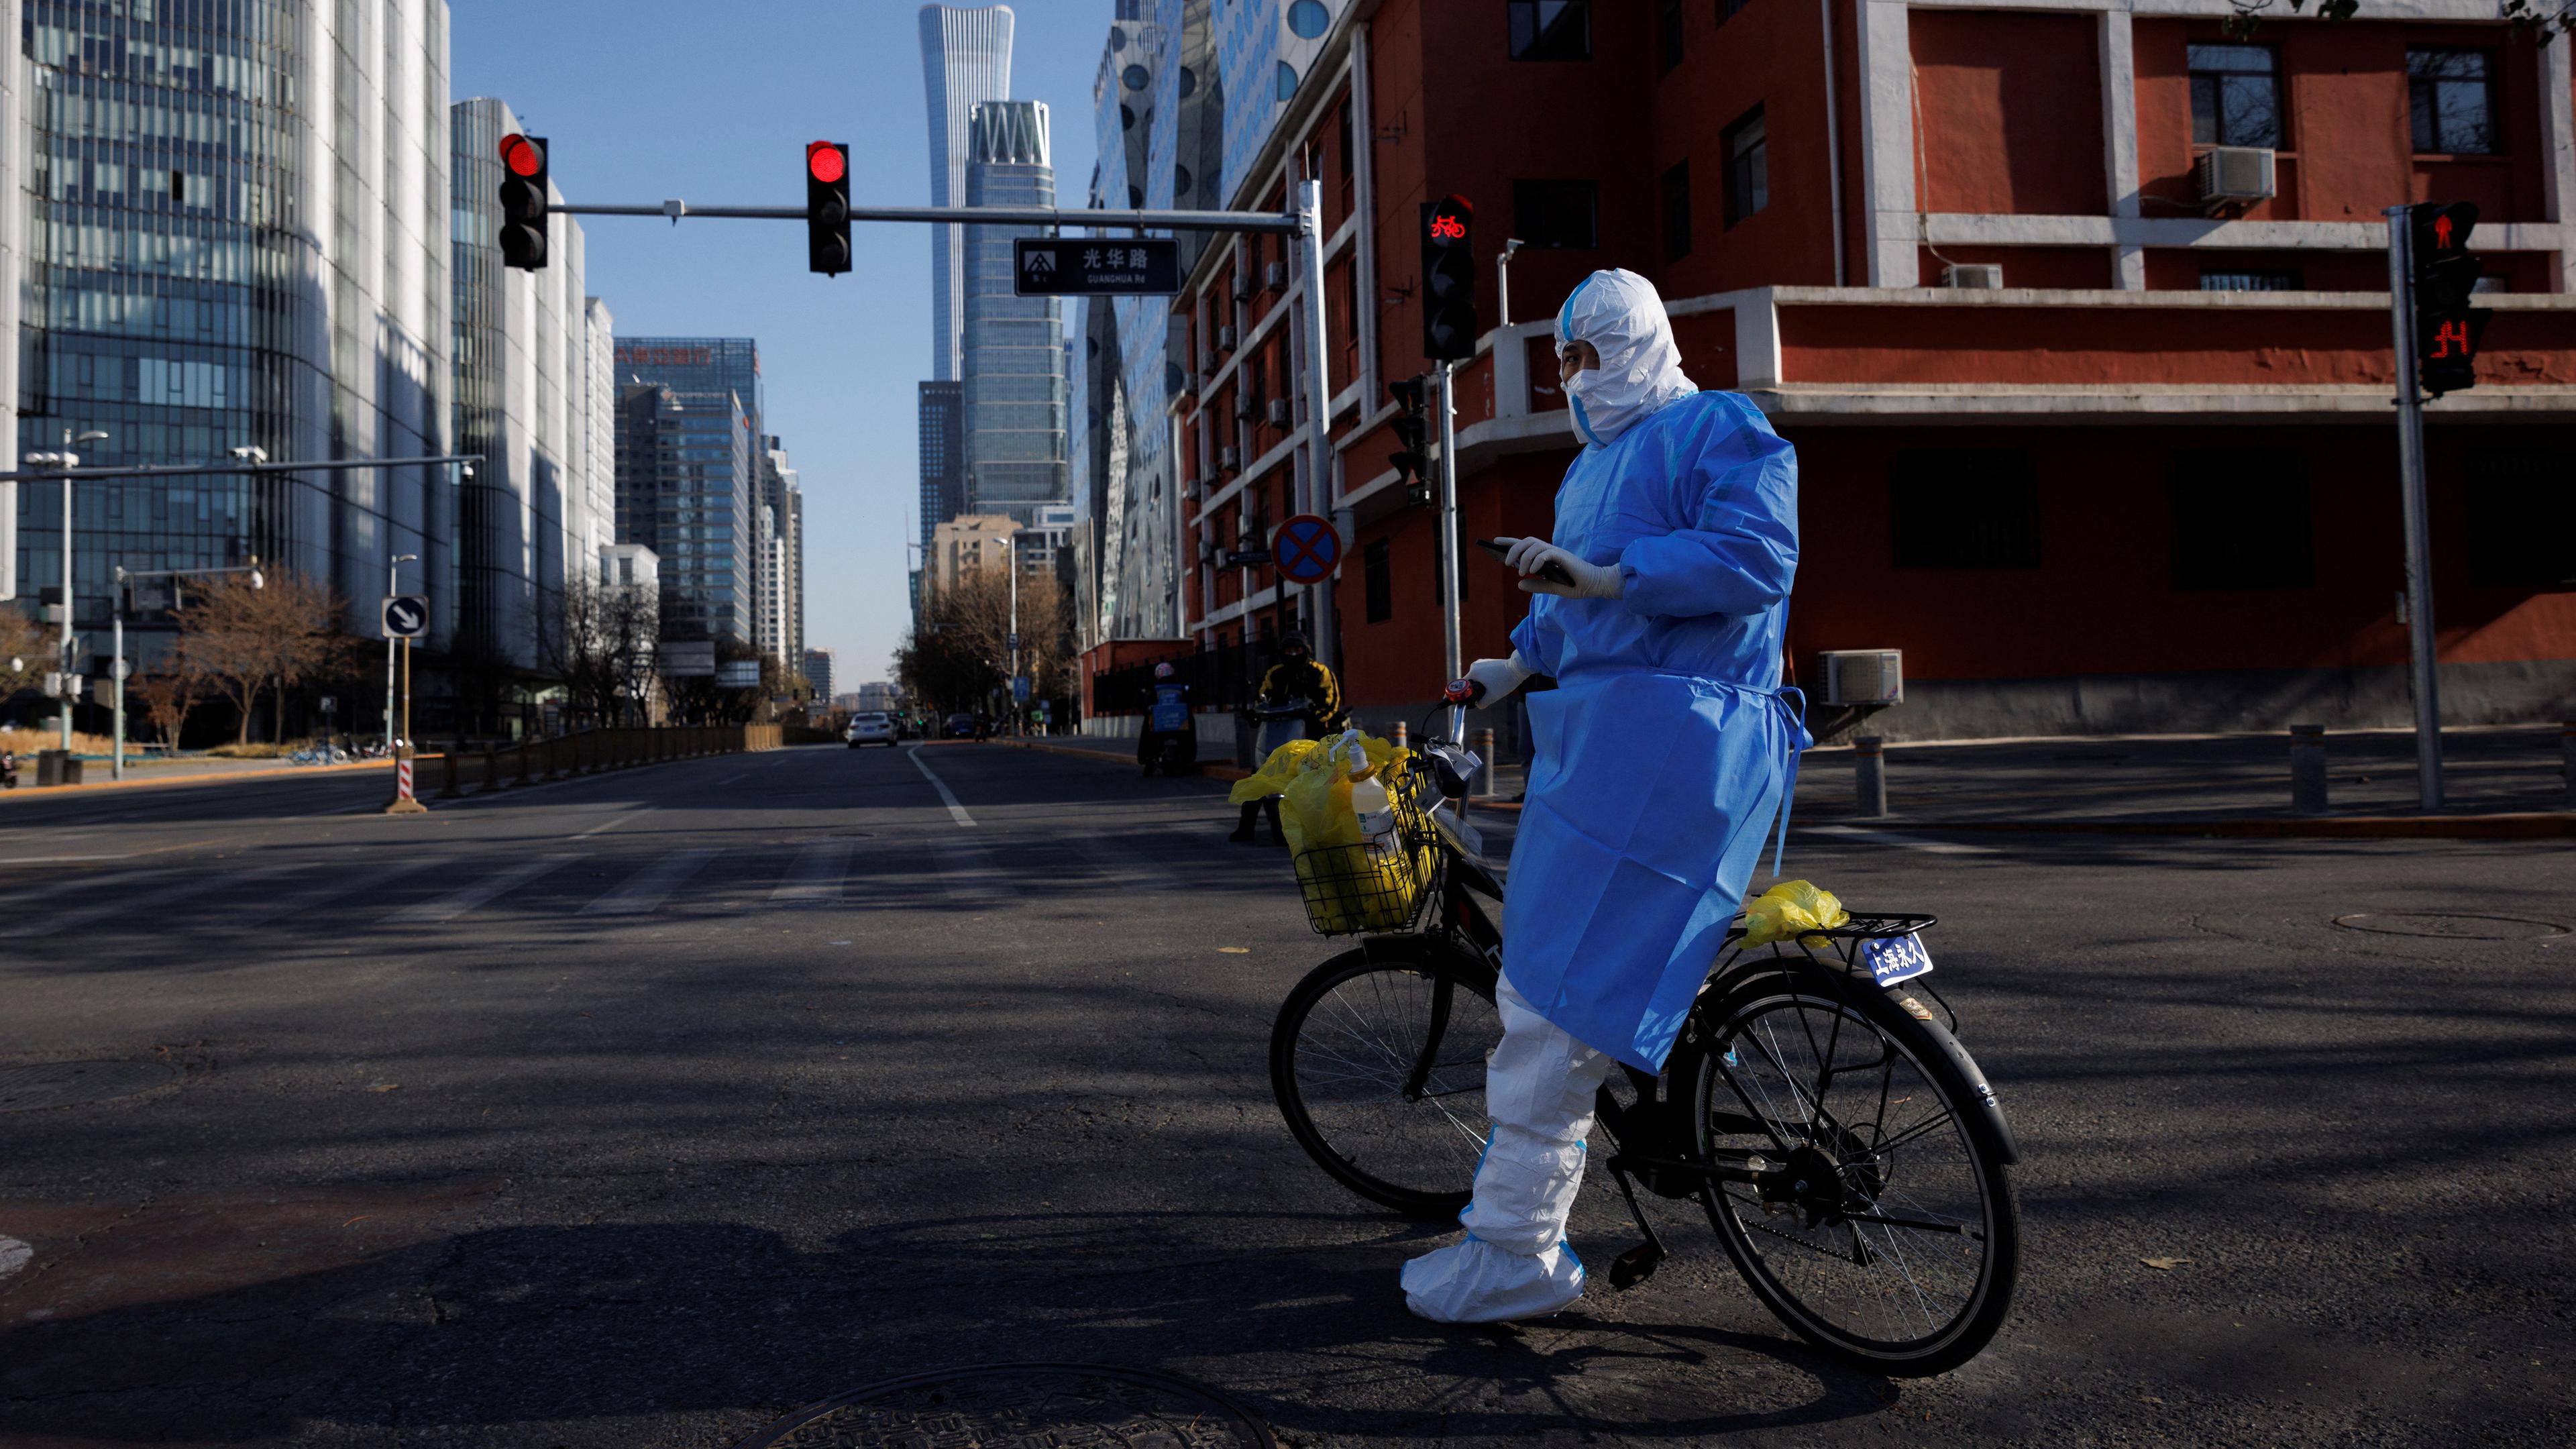 Eine Person in einem blauen Schutzanzug steht an ein Fahrrad gelehnt auf einer leeren Straße in Peking.